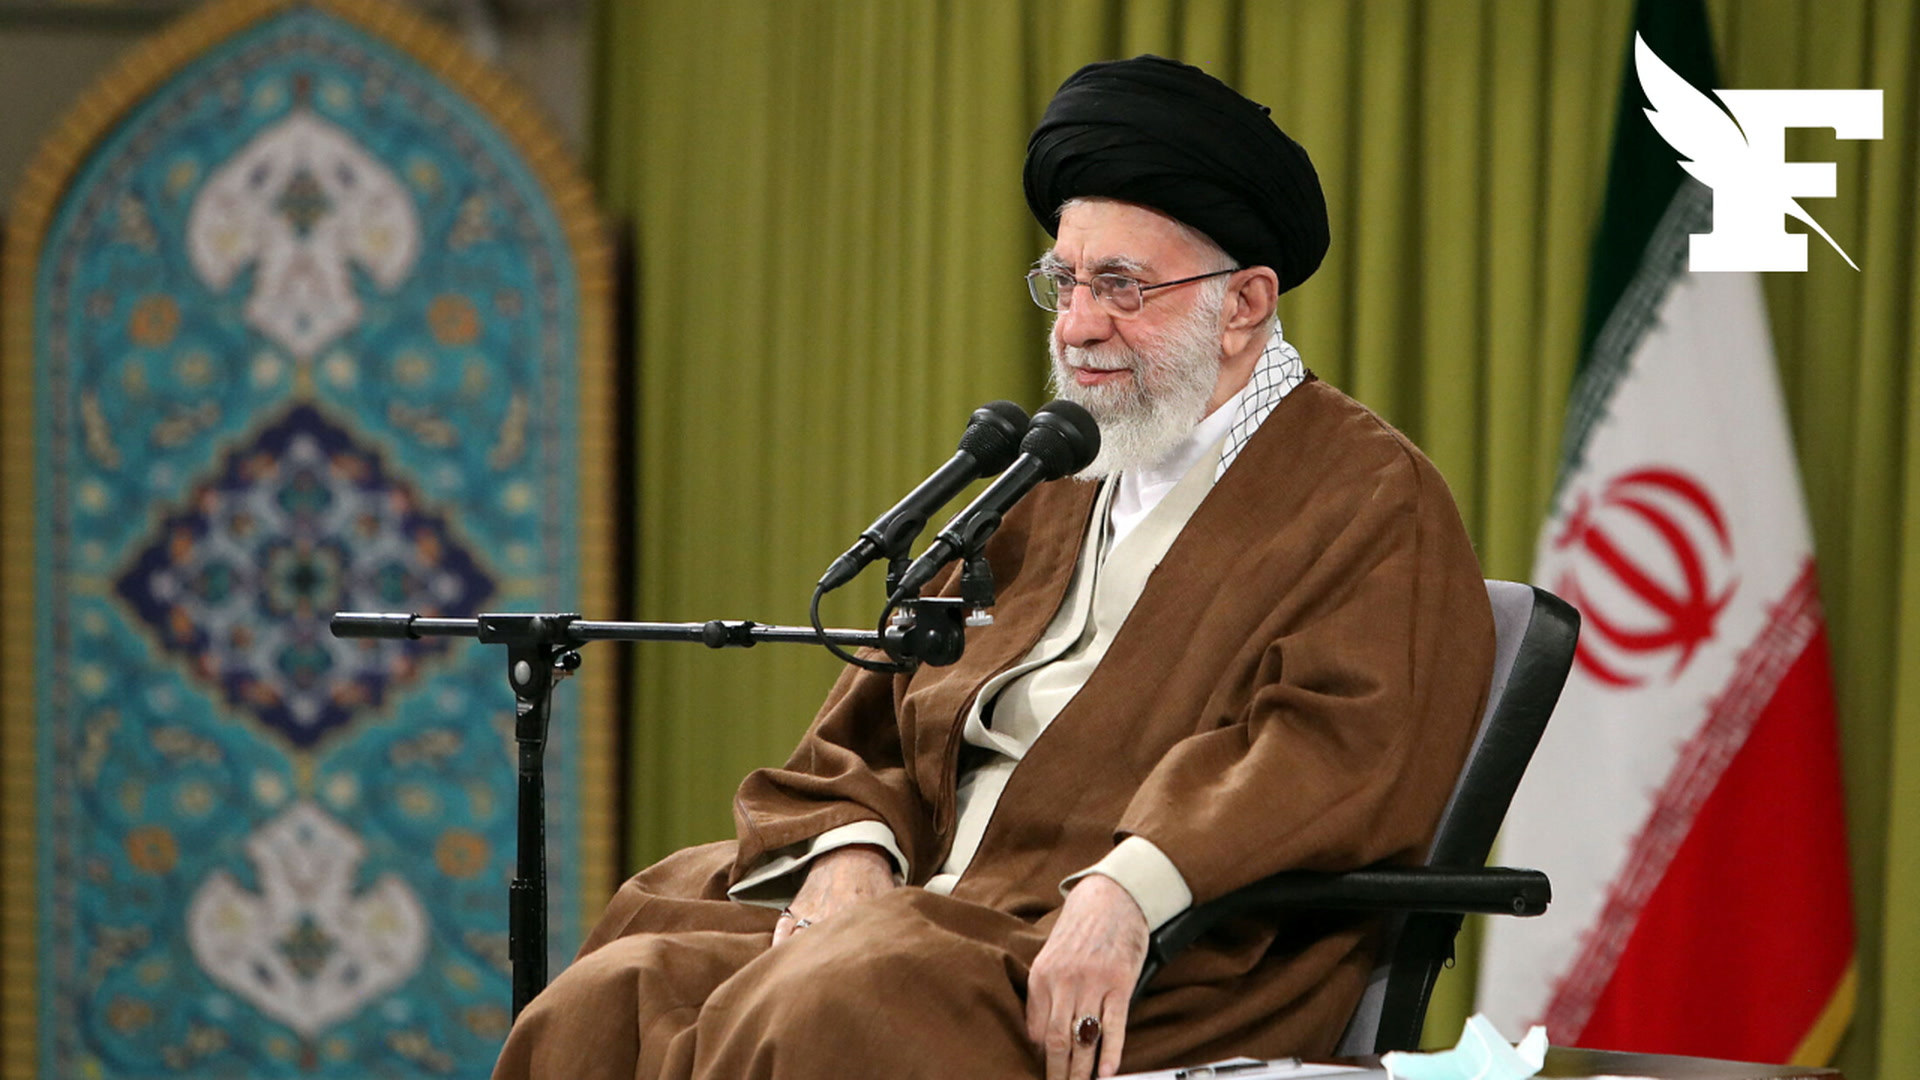 Manifestations en Iran: négocier avec les États-Unis «ne résoudrait rien», affirme l'ayatollah Khamenei